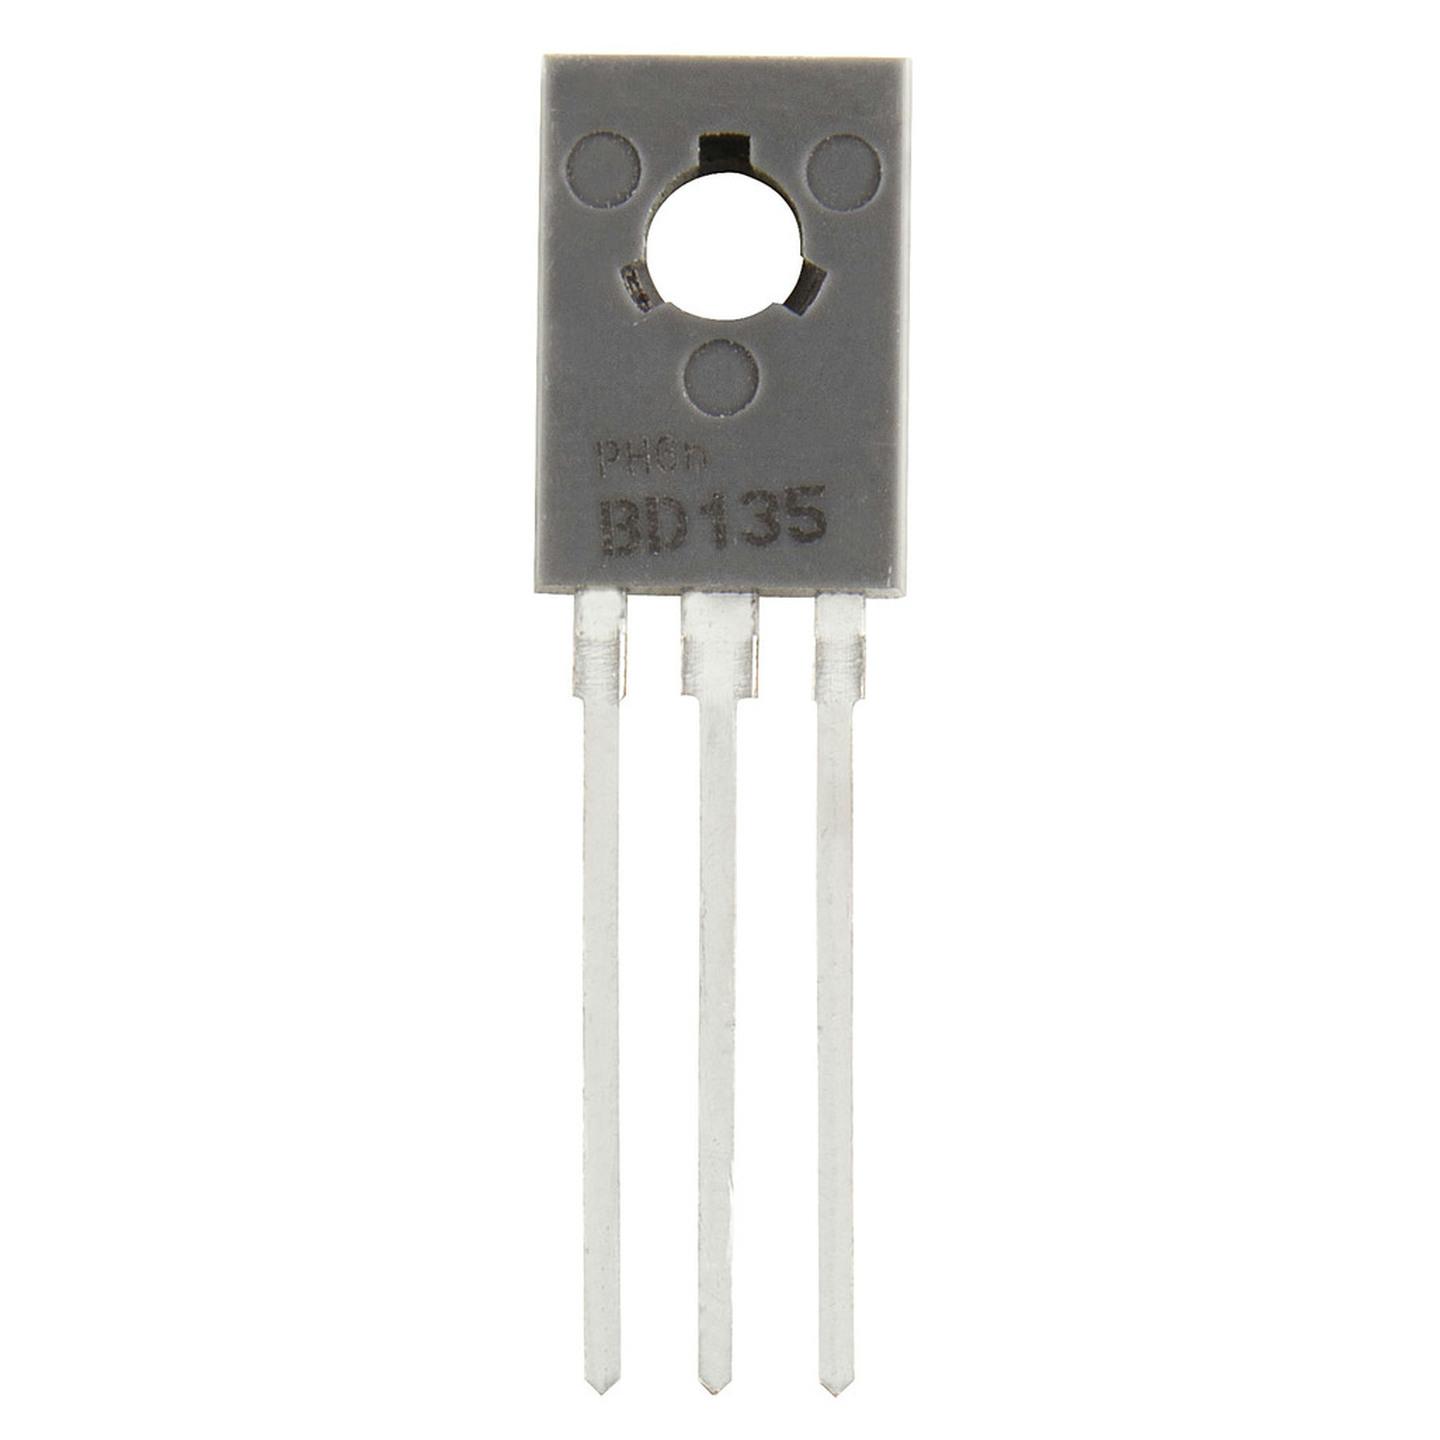 MJE340 NPN Transistor